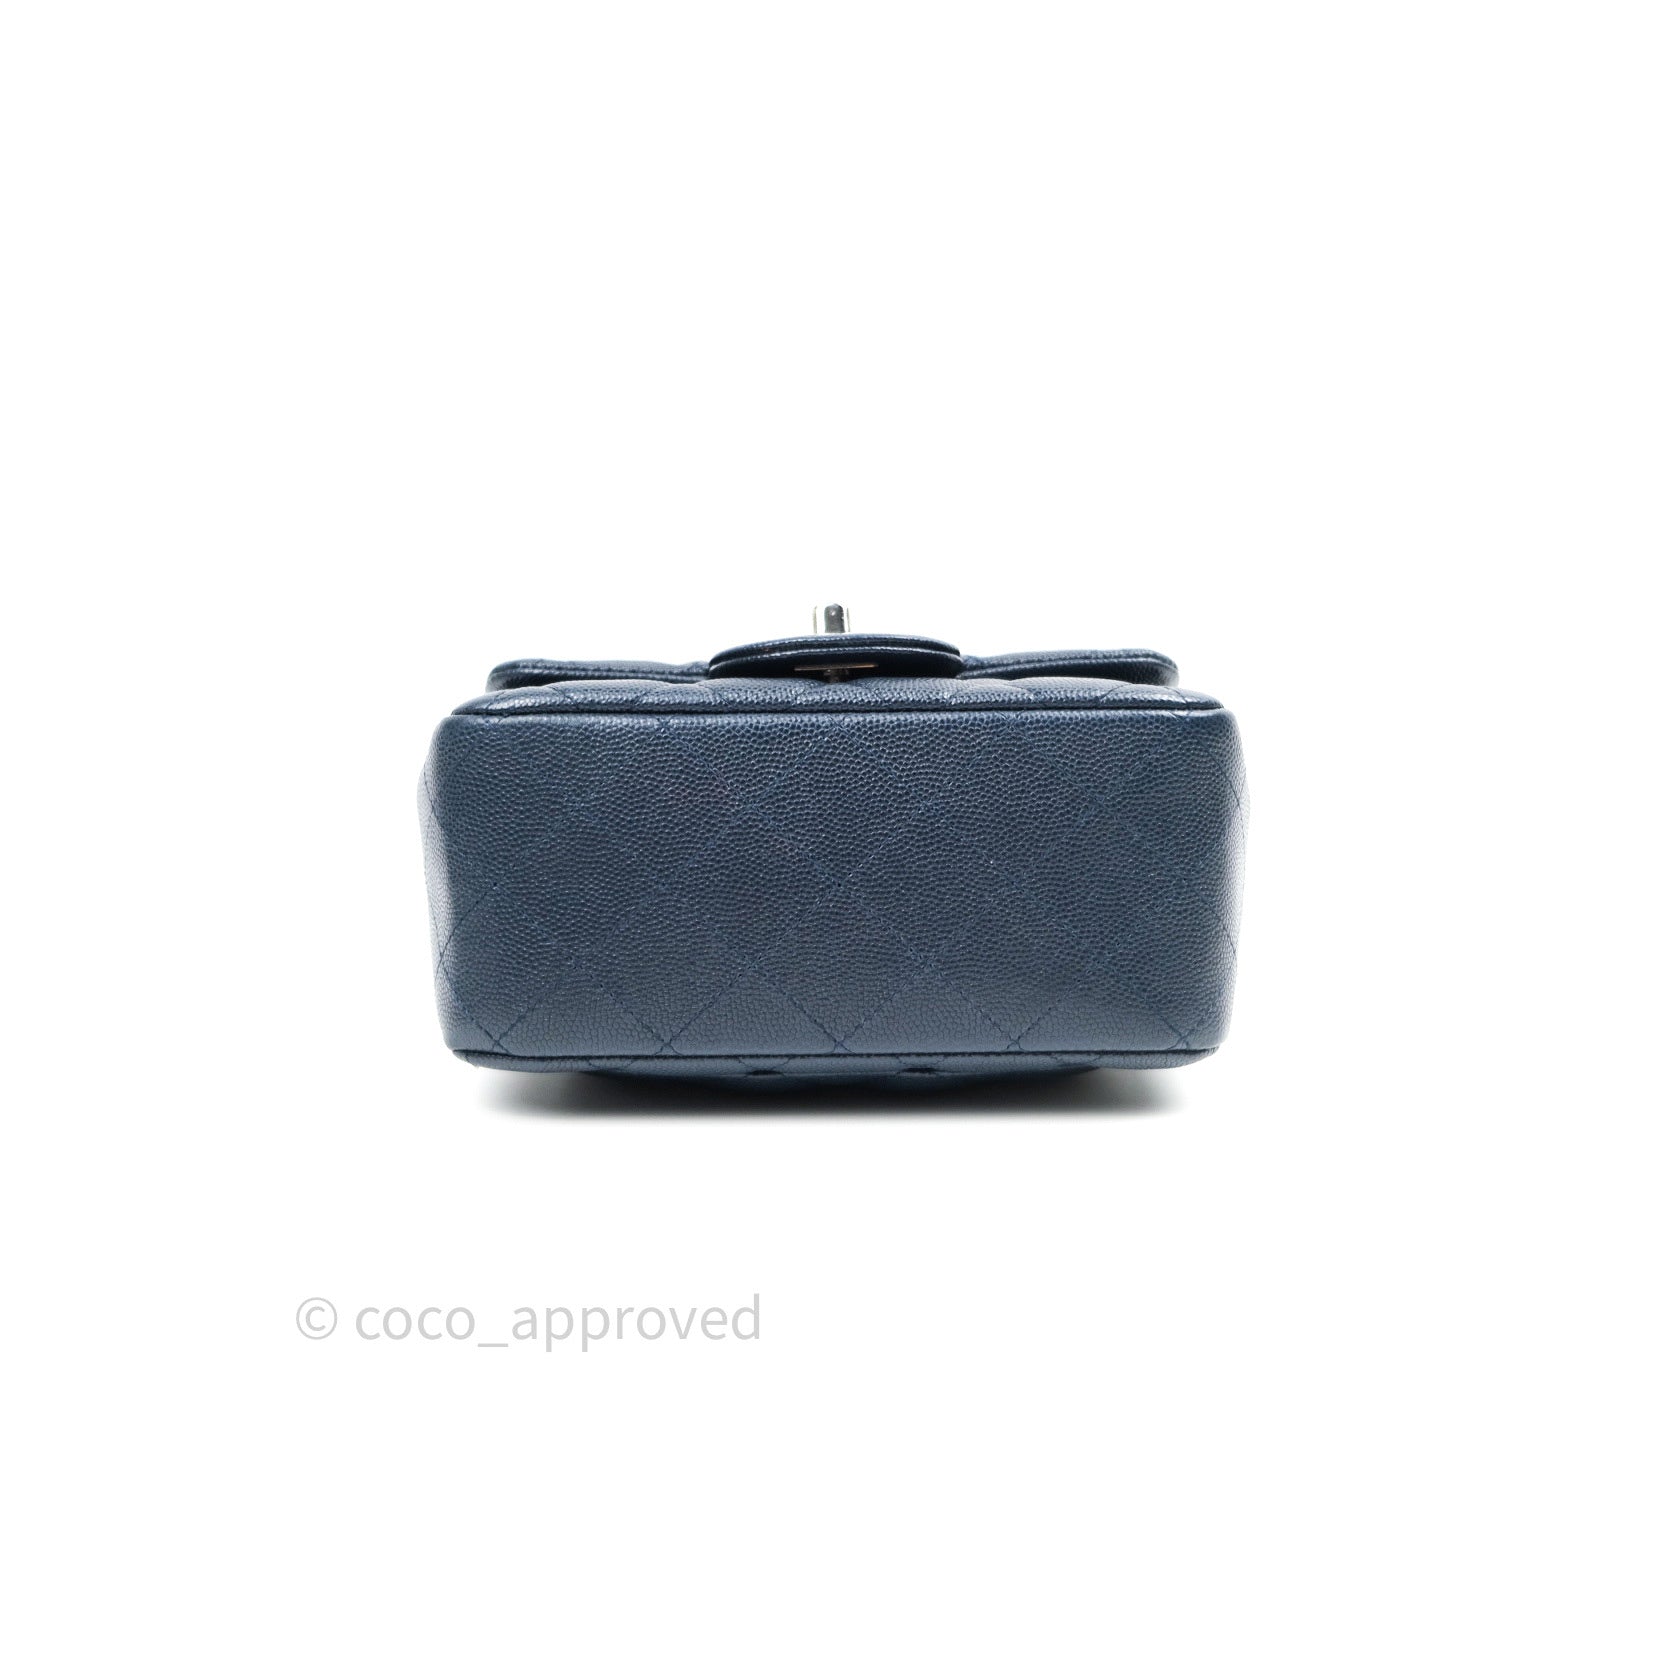 Miniature Chanel Shopping Bag [IBM B006]